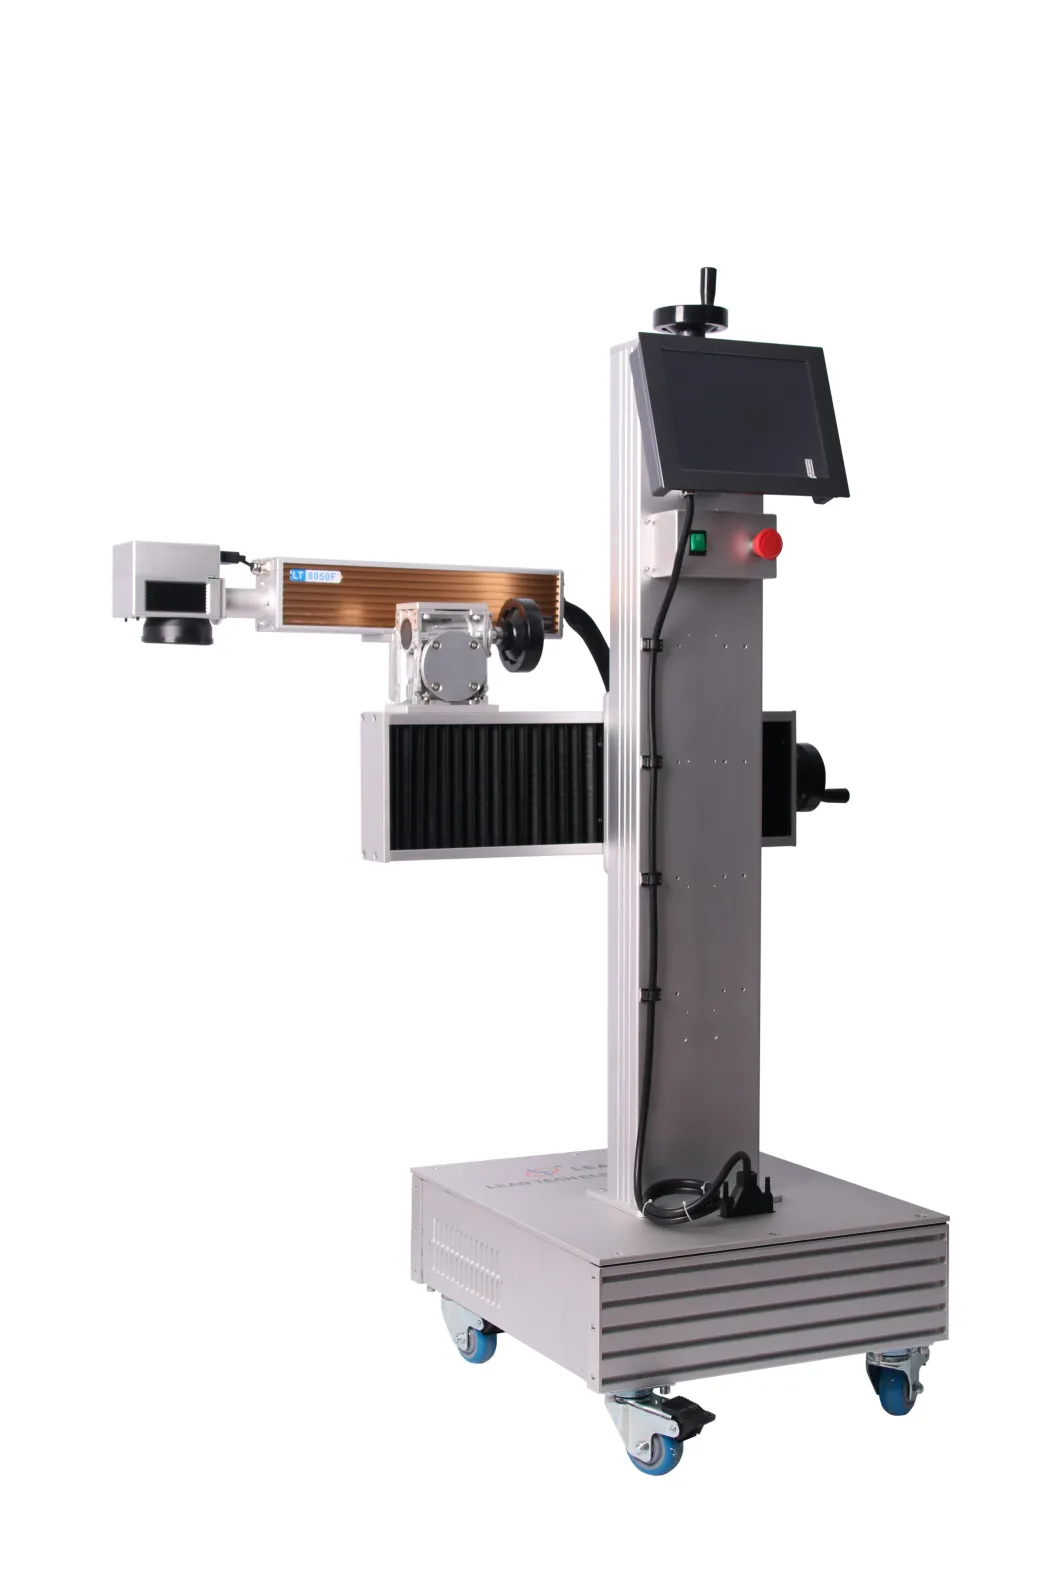 Lt8020f/Lt8030f/Lt8050f Fiber Laser Printer Marking Machine Laser Printer for Metal